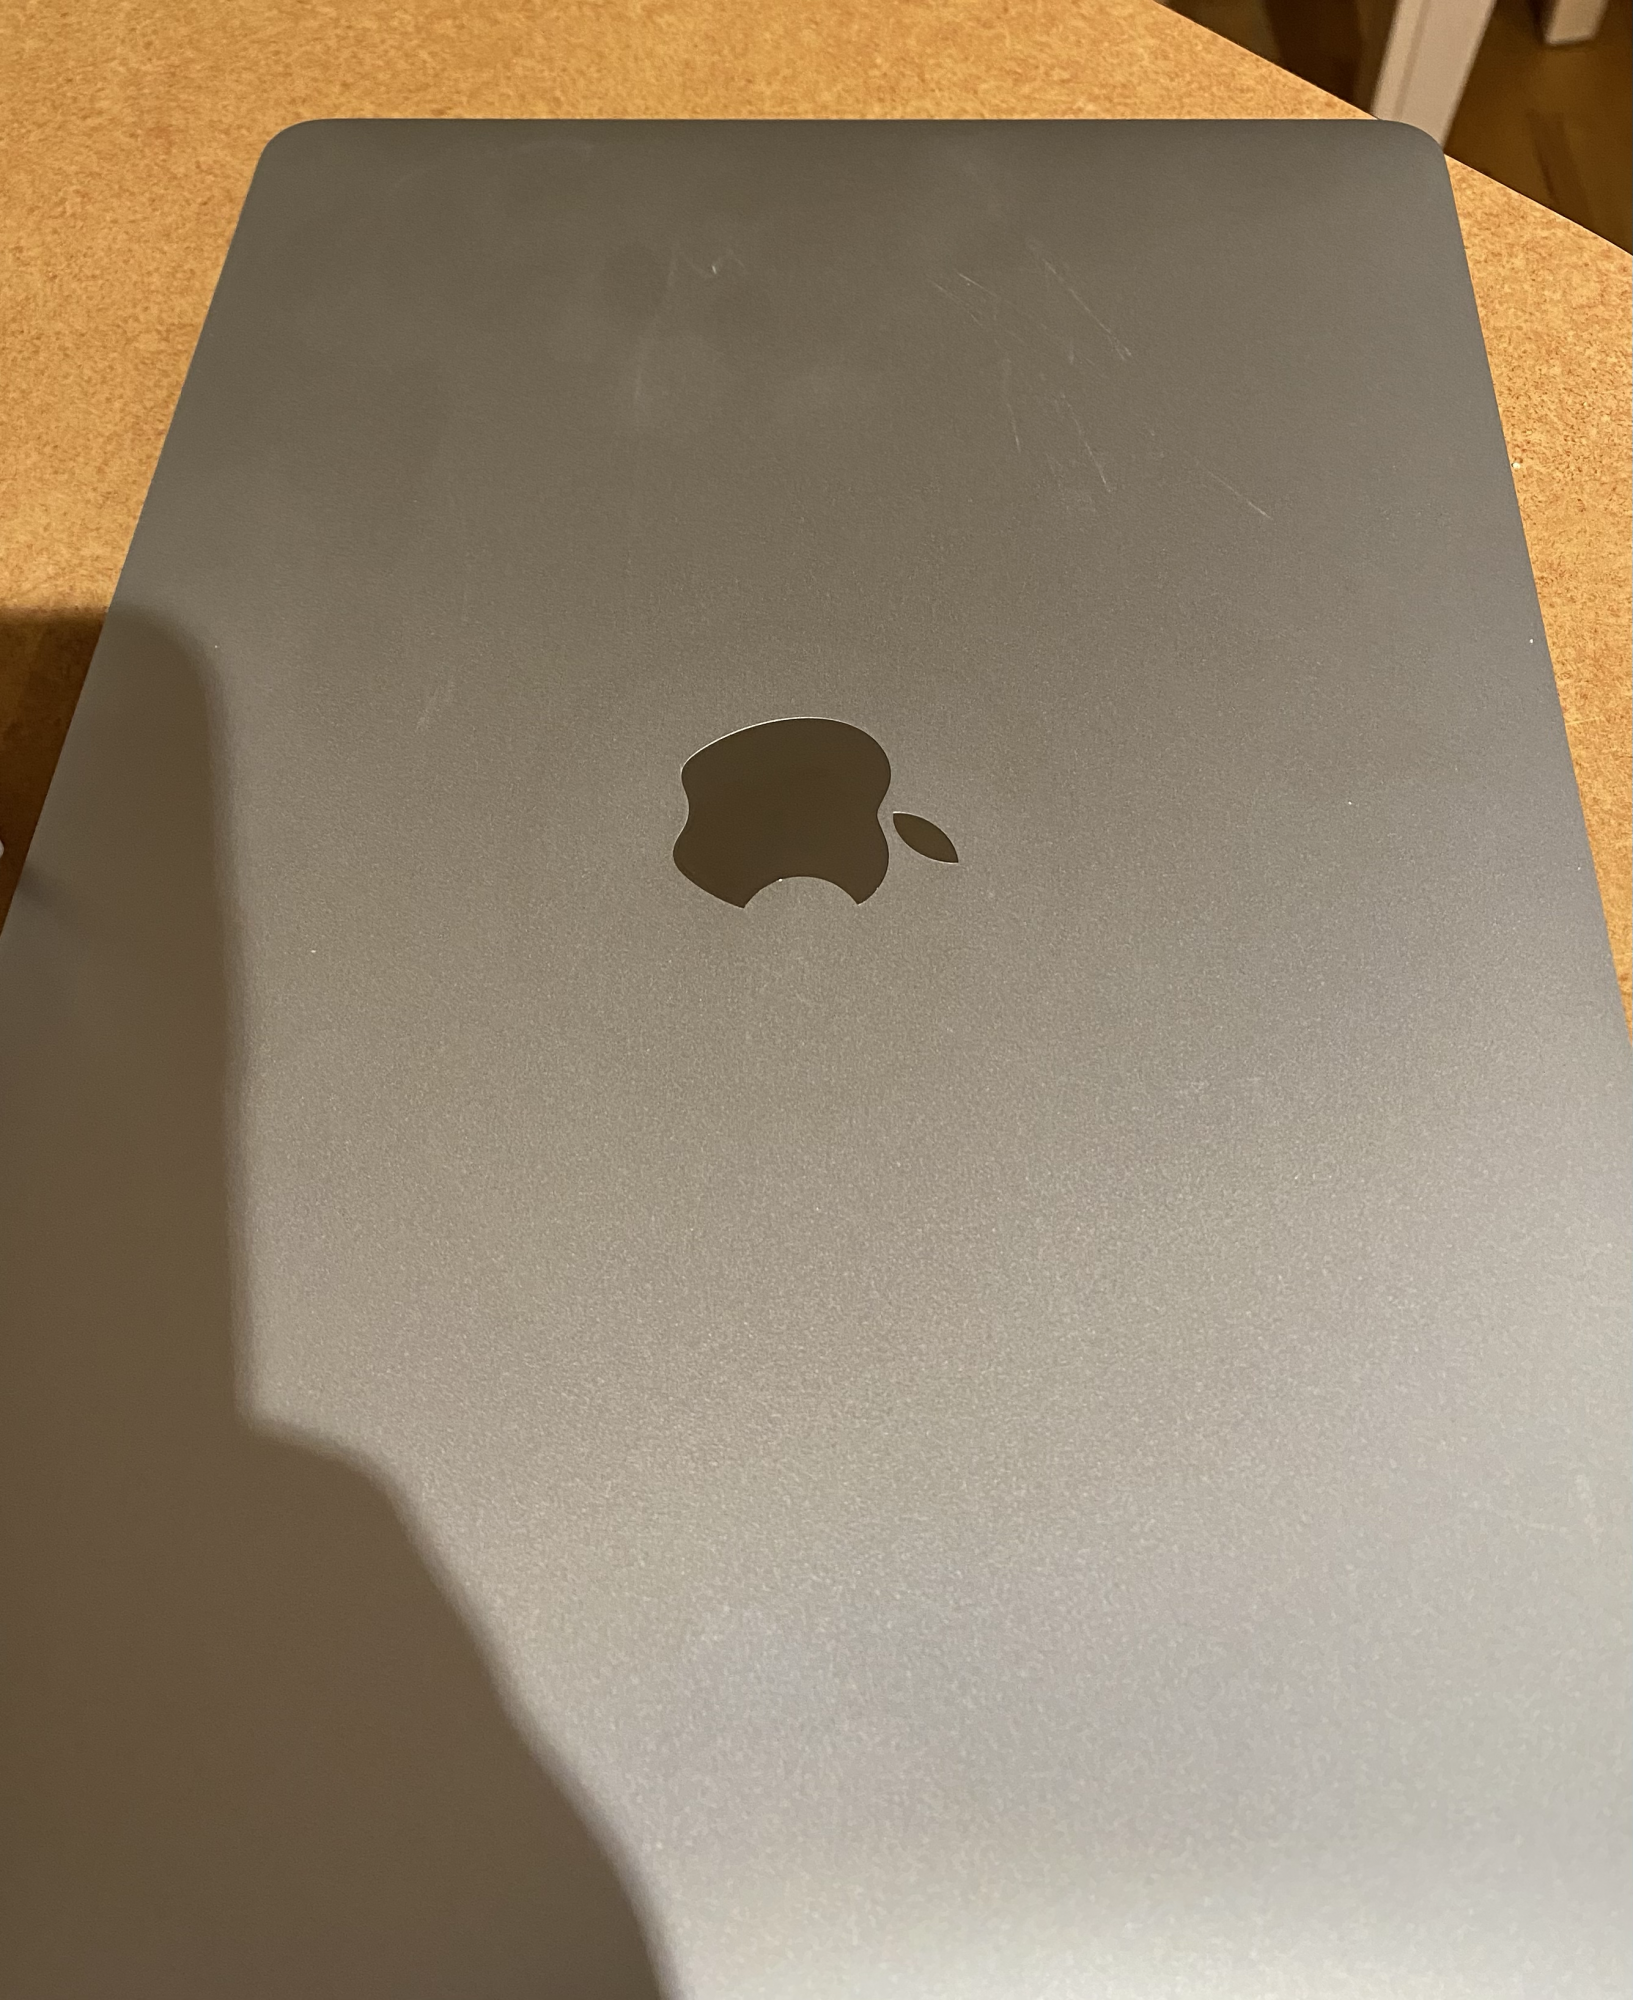 Strange circle around the Apple Logo | MacRumors Forums